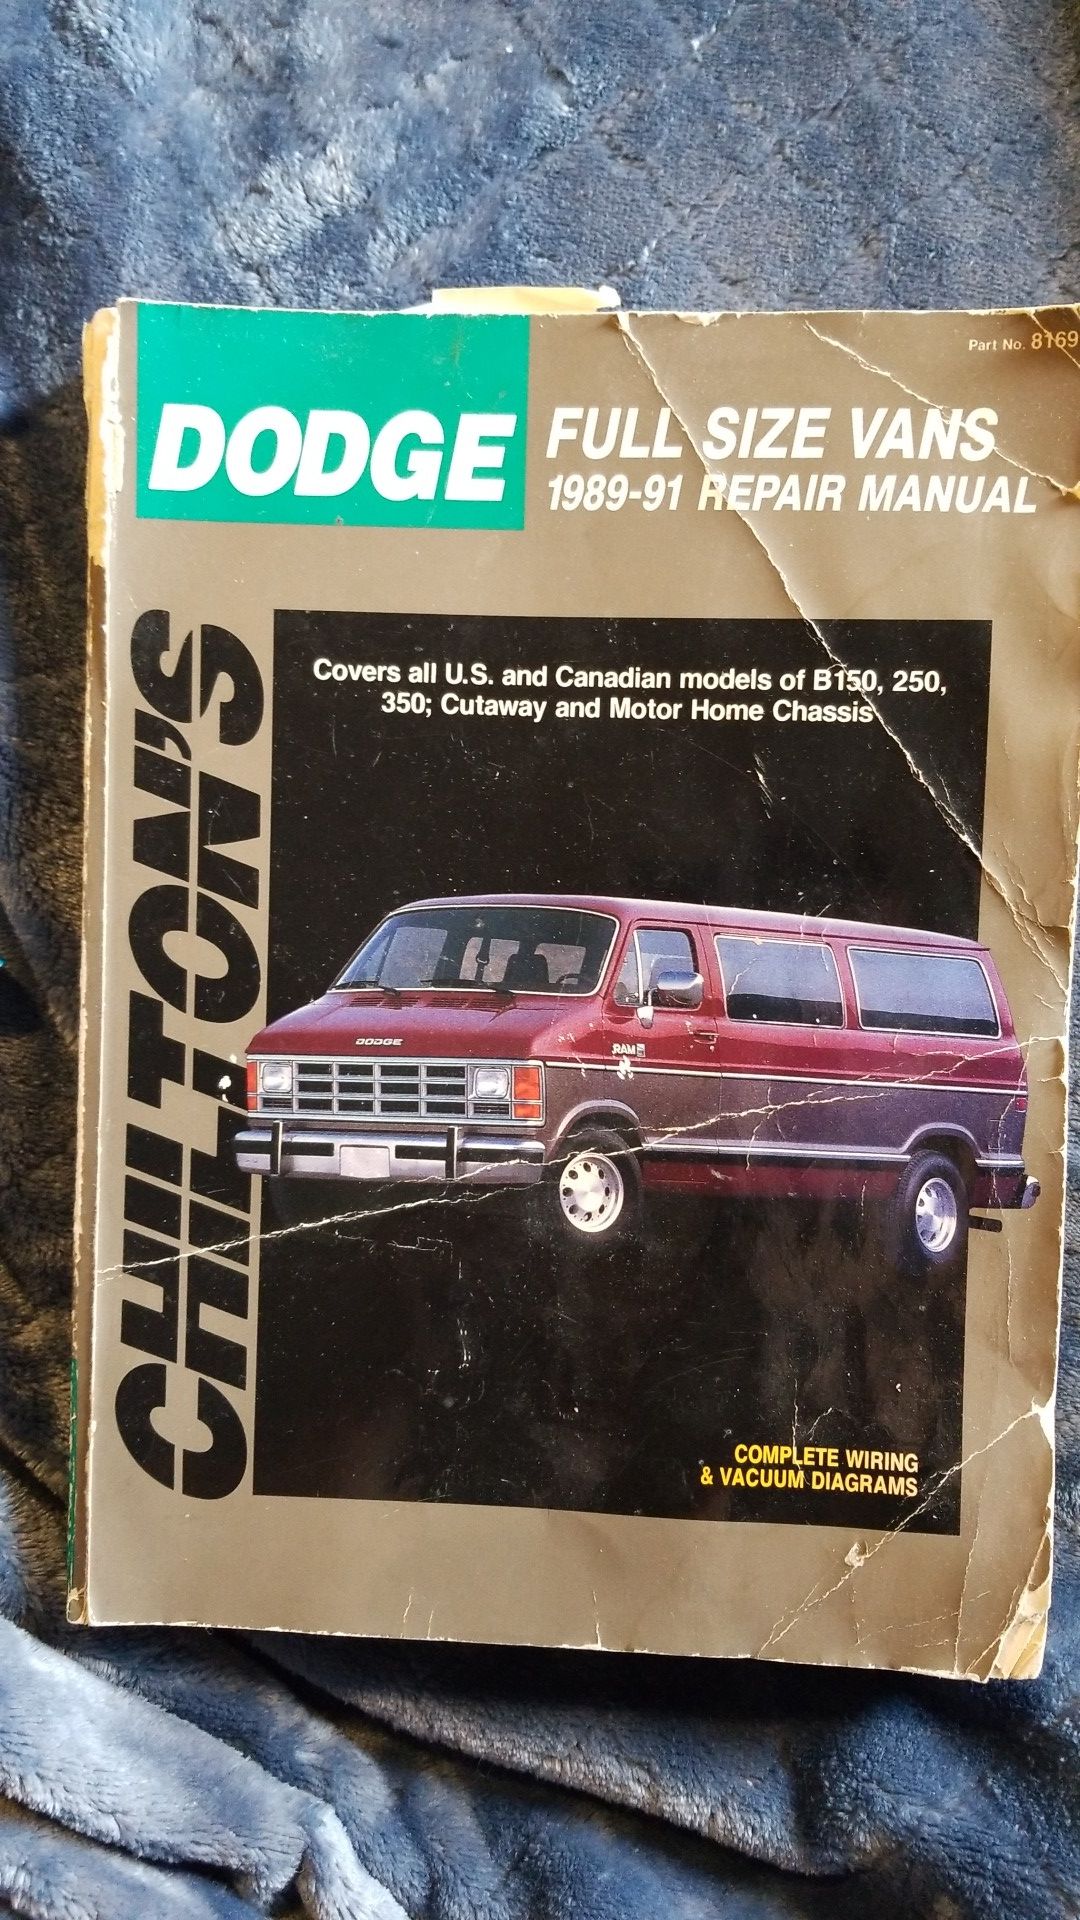 DODGE full size Van repair manual for 1989-91